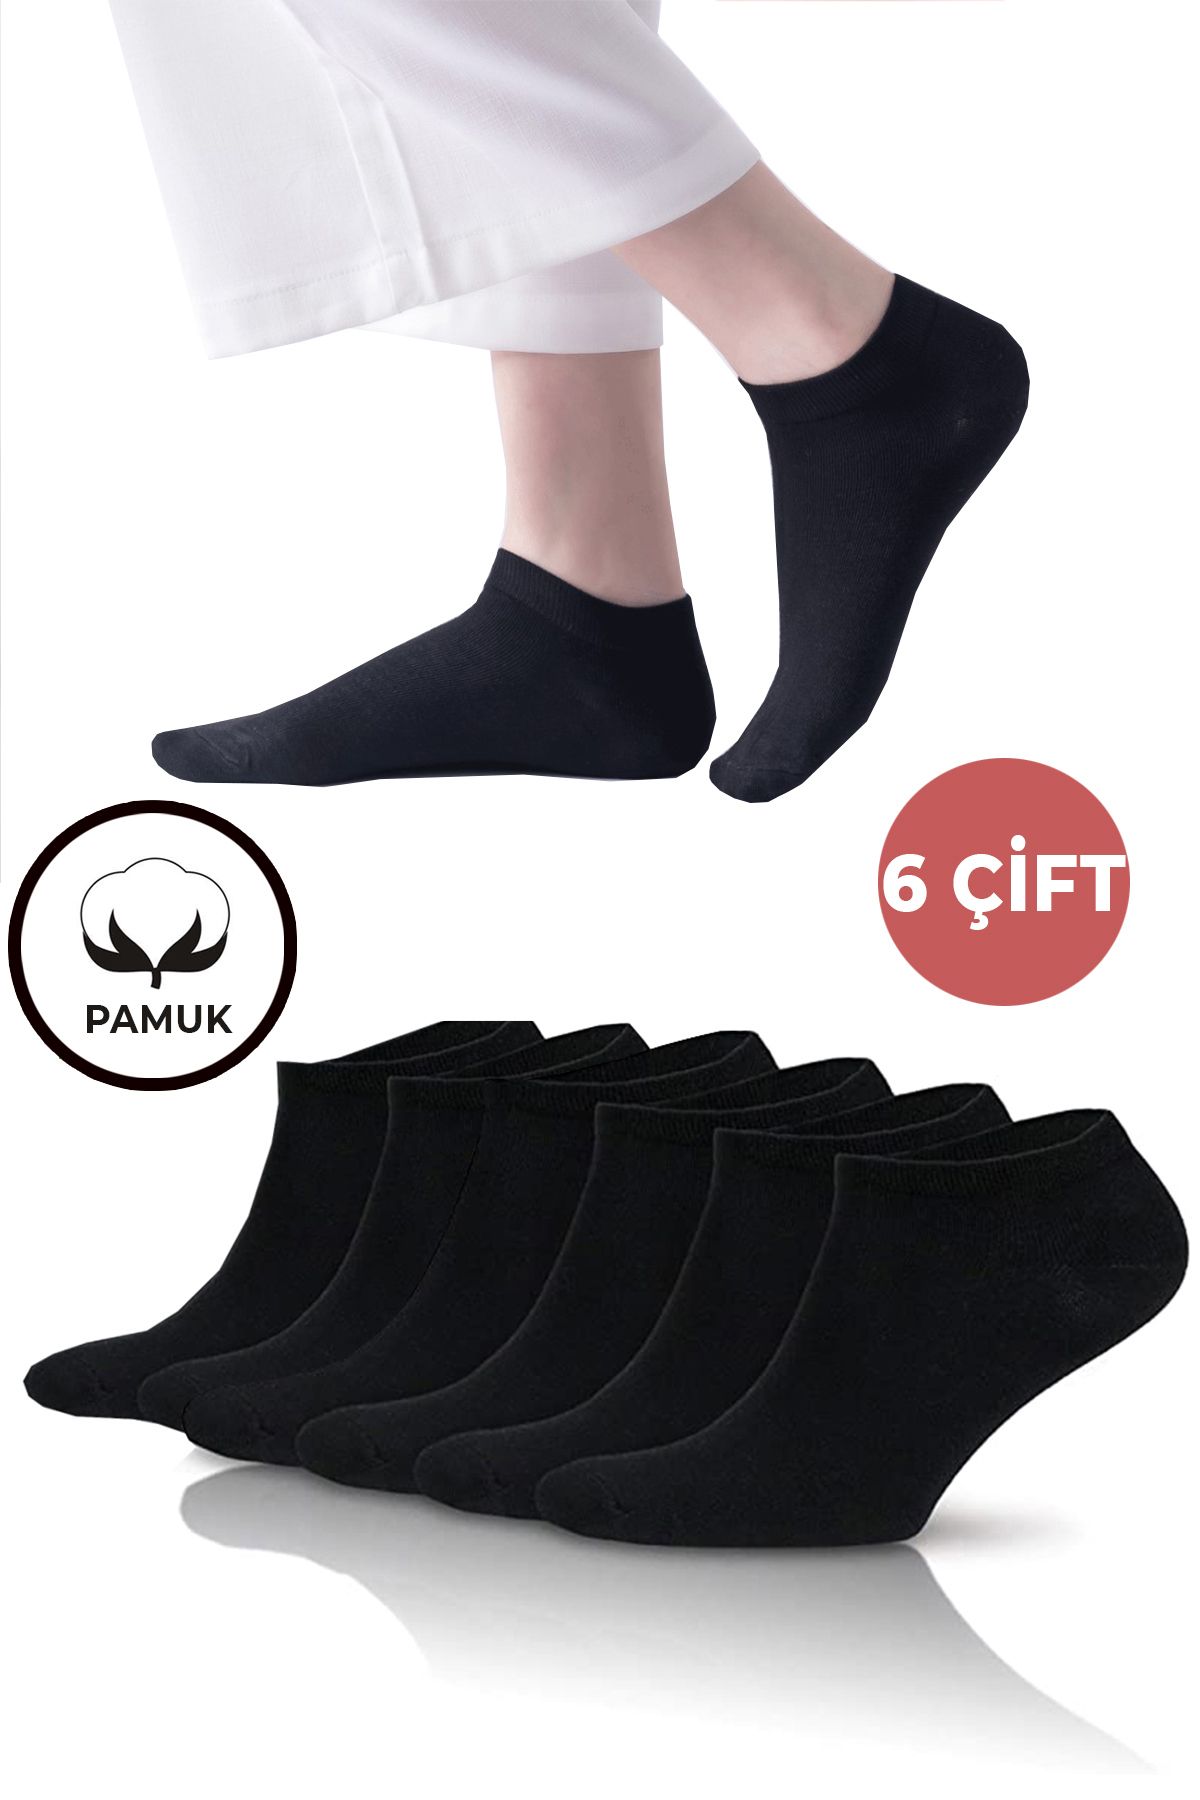 Socks Stations Pamuklu Siyah Kısa Patik Çorap Kutusu 6'lı Çorap Seti - Kadın Patik Çorabı Ve Erkek Patik Çorabı